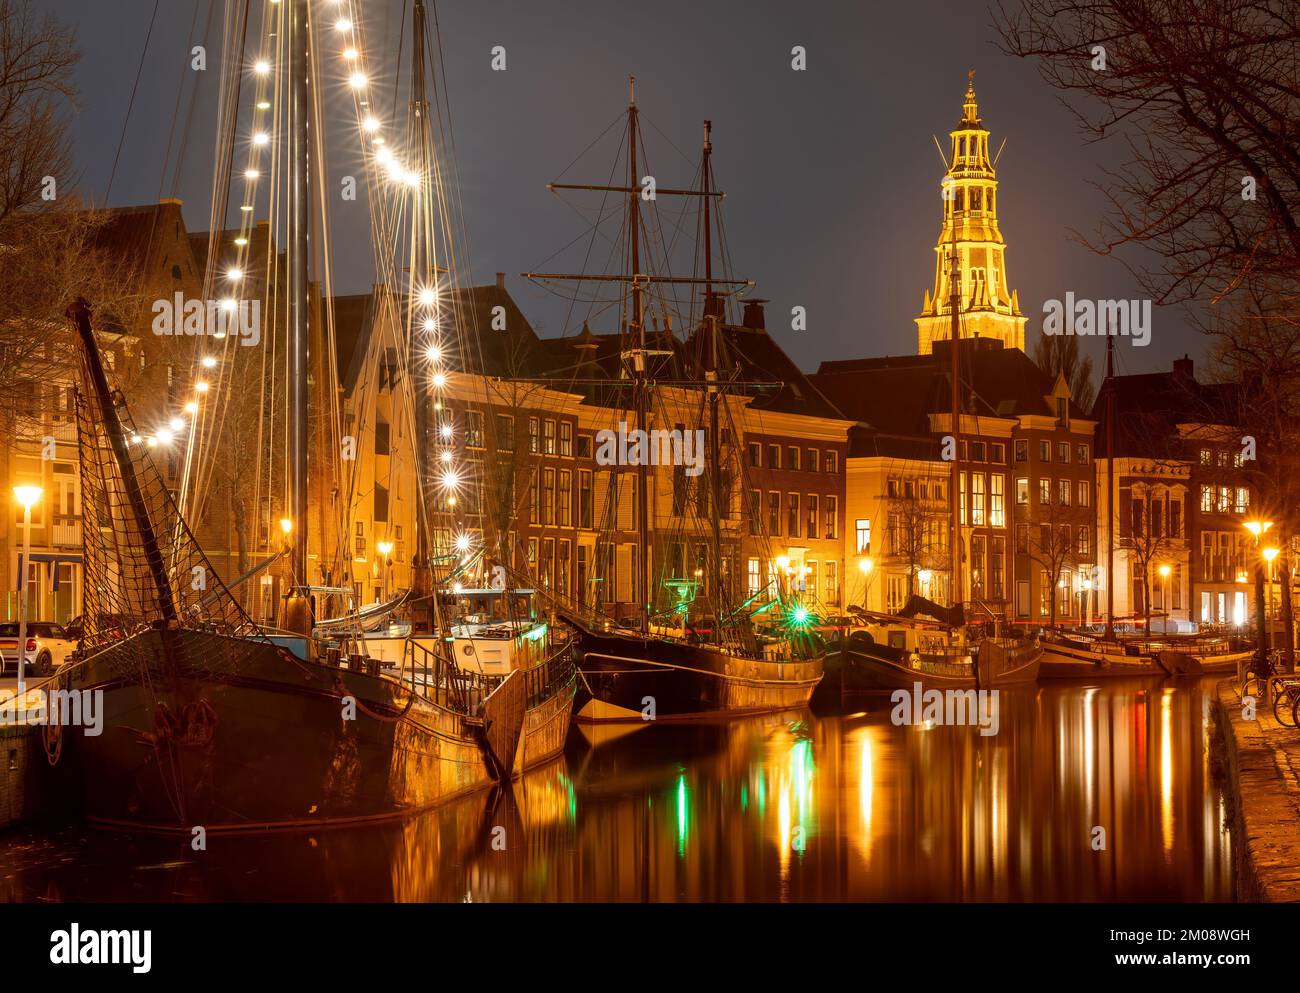 Paysage urbain de Groningen la nuit, vue sur les navires historiques, le canal et la tour de l'église Banque D'Images